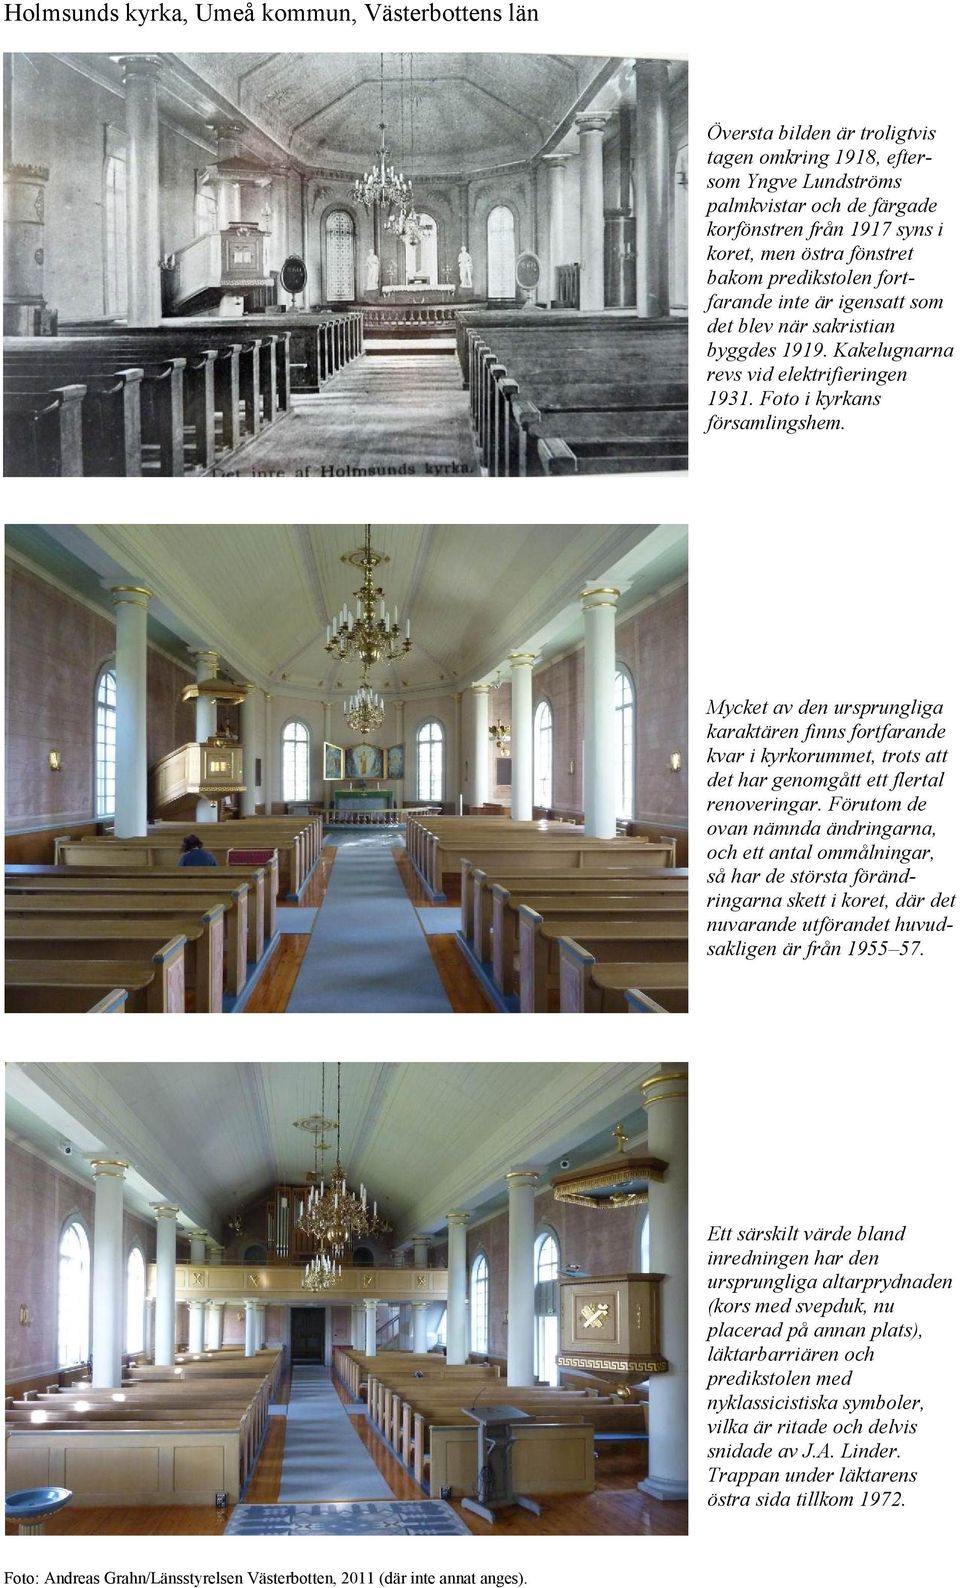 Mycket av den ursprungliga karaktären finns fortfarande kvar i kyrkorummet, trots att det har genomgått ett flertal renoveringar.